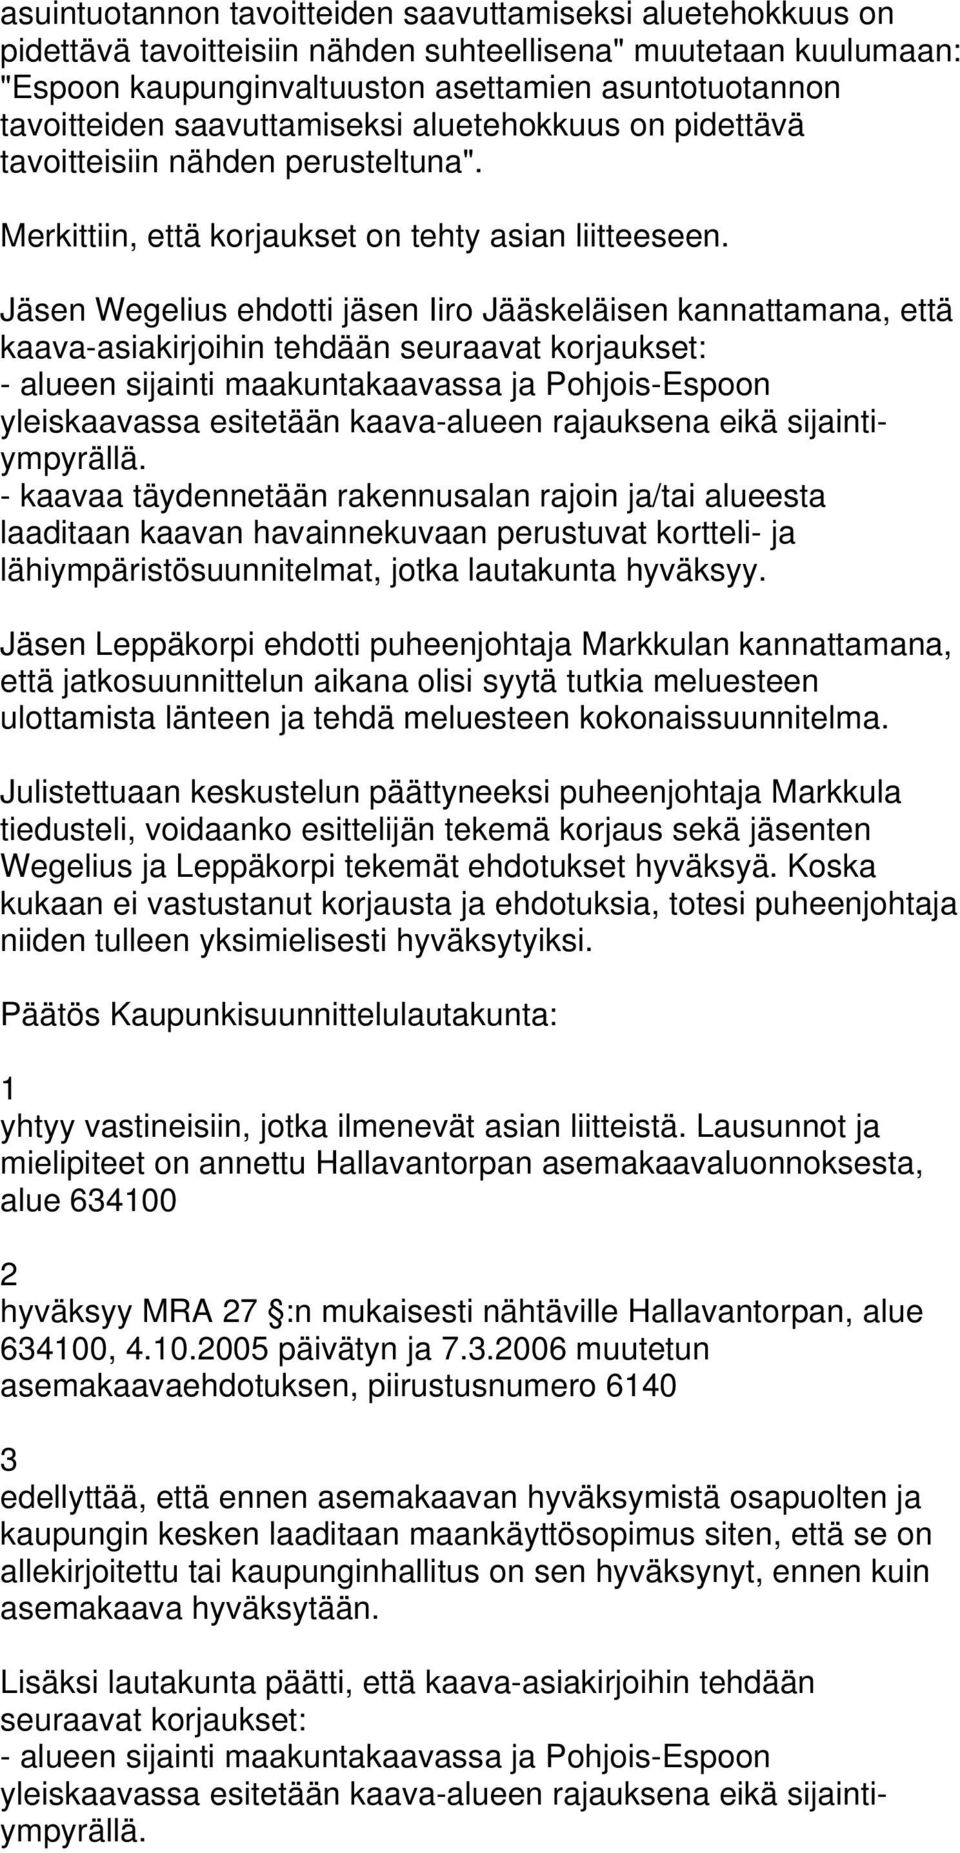 Jäsen Wegelius ehdotti jäsen Iiro Jääskeläisen kannattamana, että kaava-asiakirjoihin tehdään seuraavat korjaukset: - alueen sijainti maakuntakaavassa ja Pohjois-Espoon yleiskaavassa esitetään